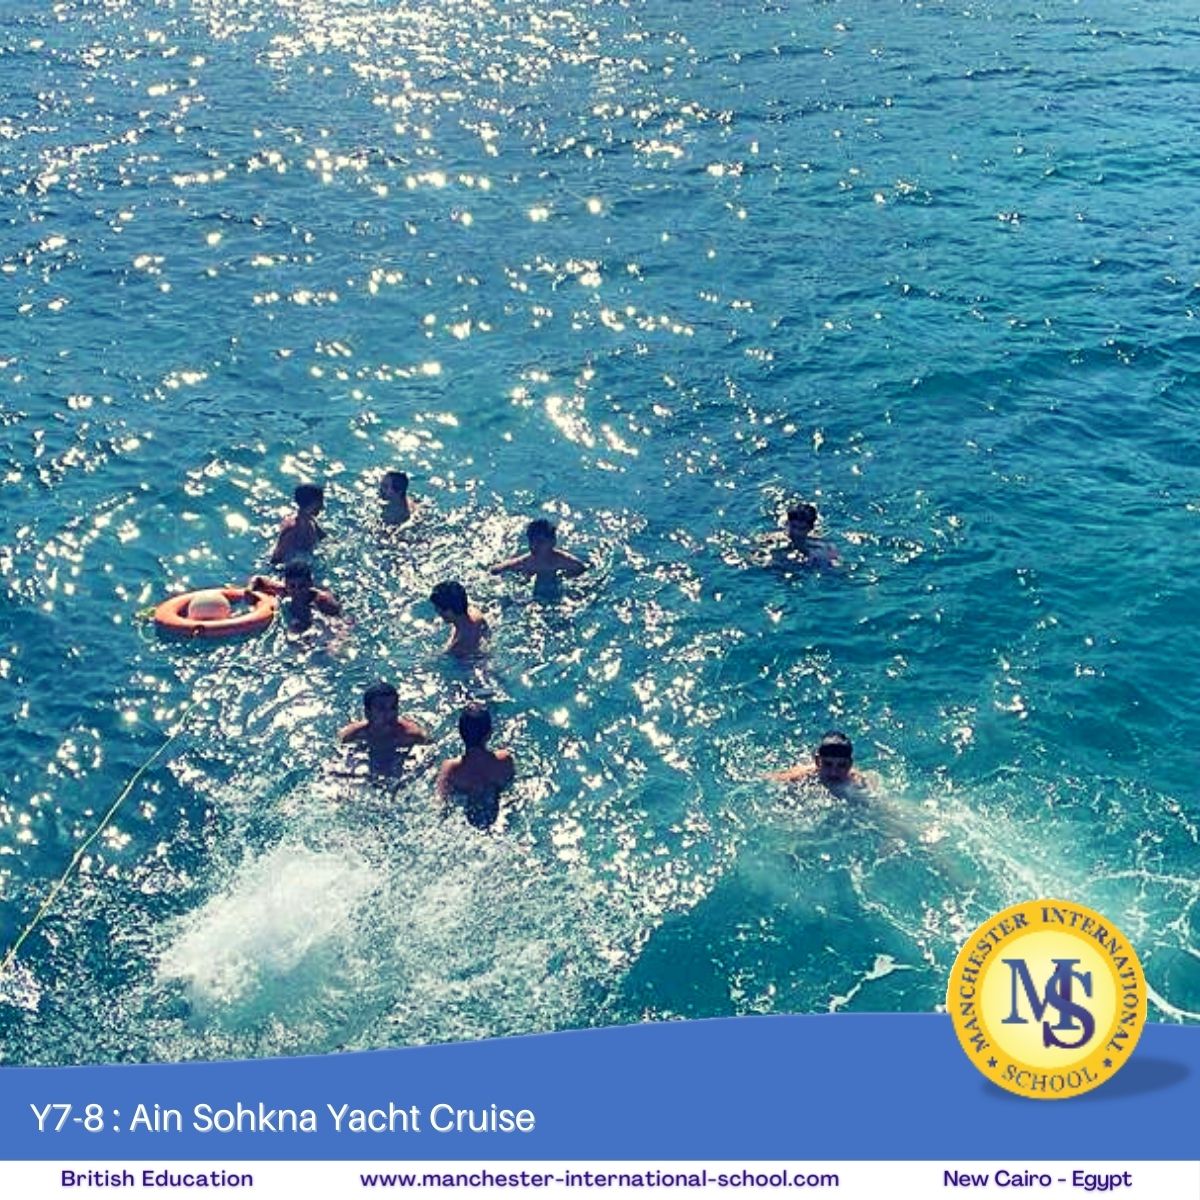 Y7-8 Ain Sokhna Yacht Cruise